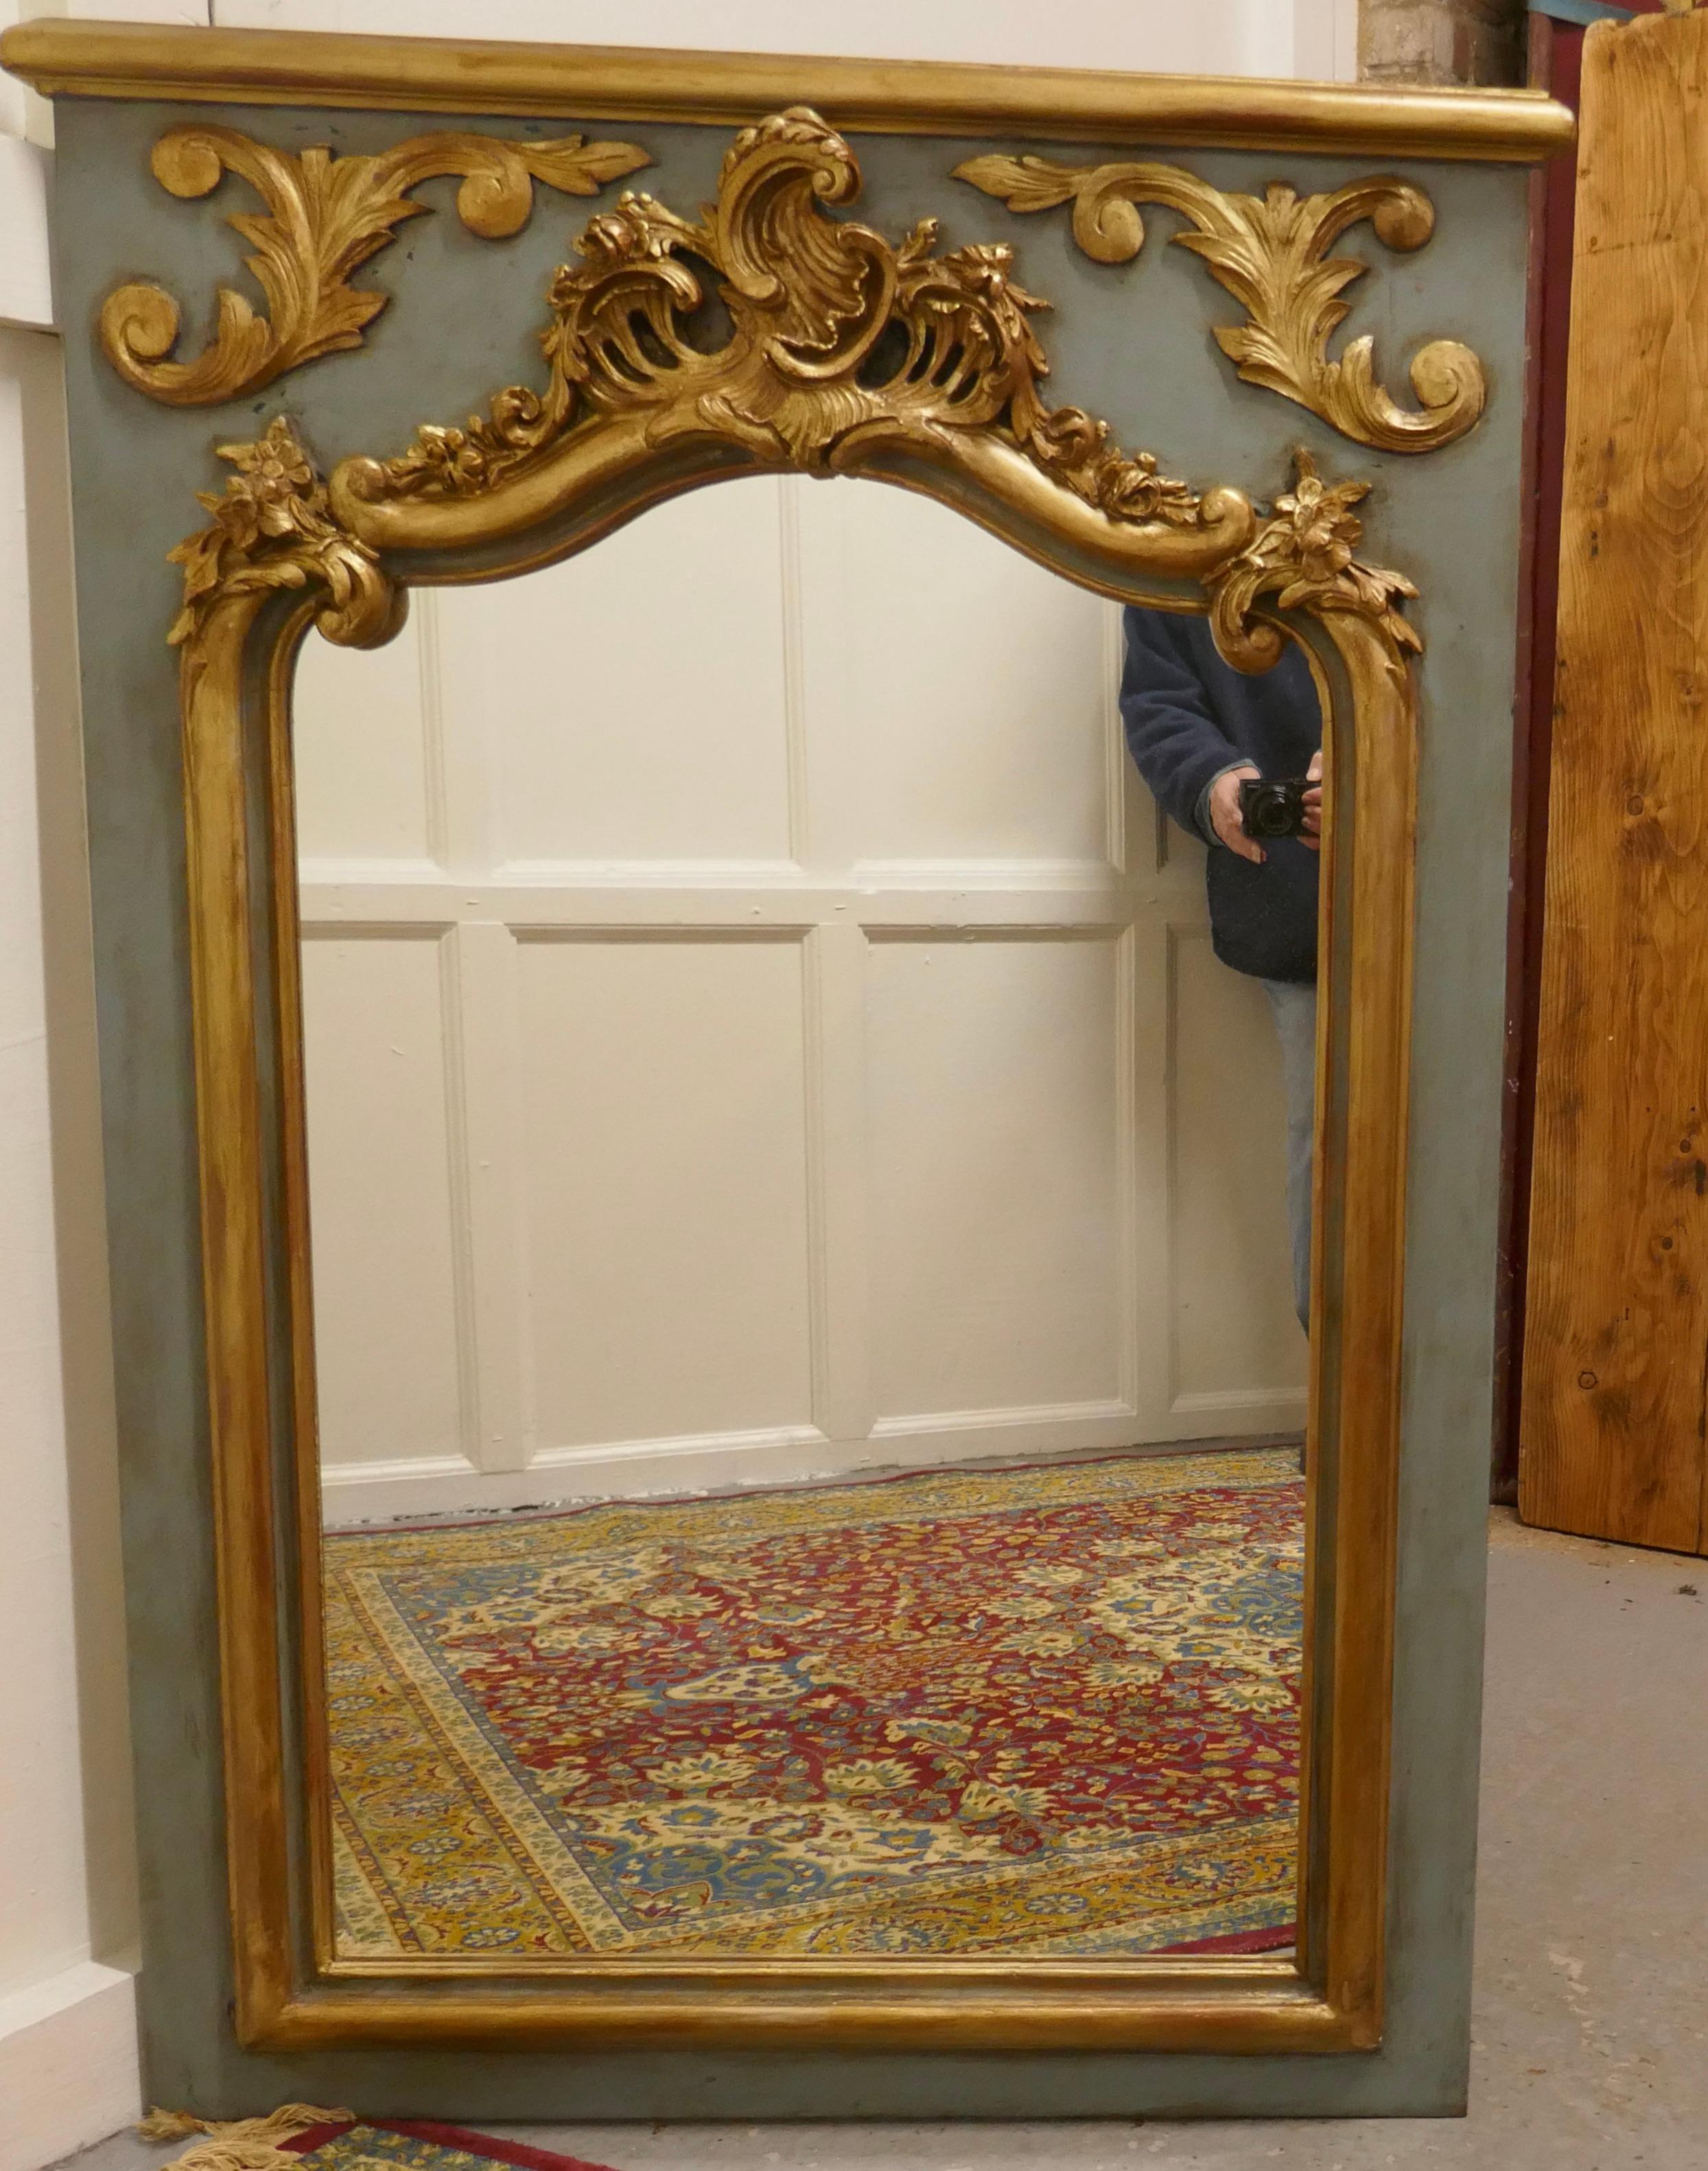 Miroir console Napoléon II français sculpté, doré et peint

Il s'agit d'un très beau miroir, le haut du miroir a une forme d'arc festonné, bordé de sculptures en gesso doré qui sont placées sur un cadre peint. L'or donne un aspect attrayant avec